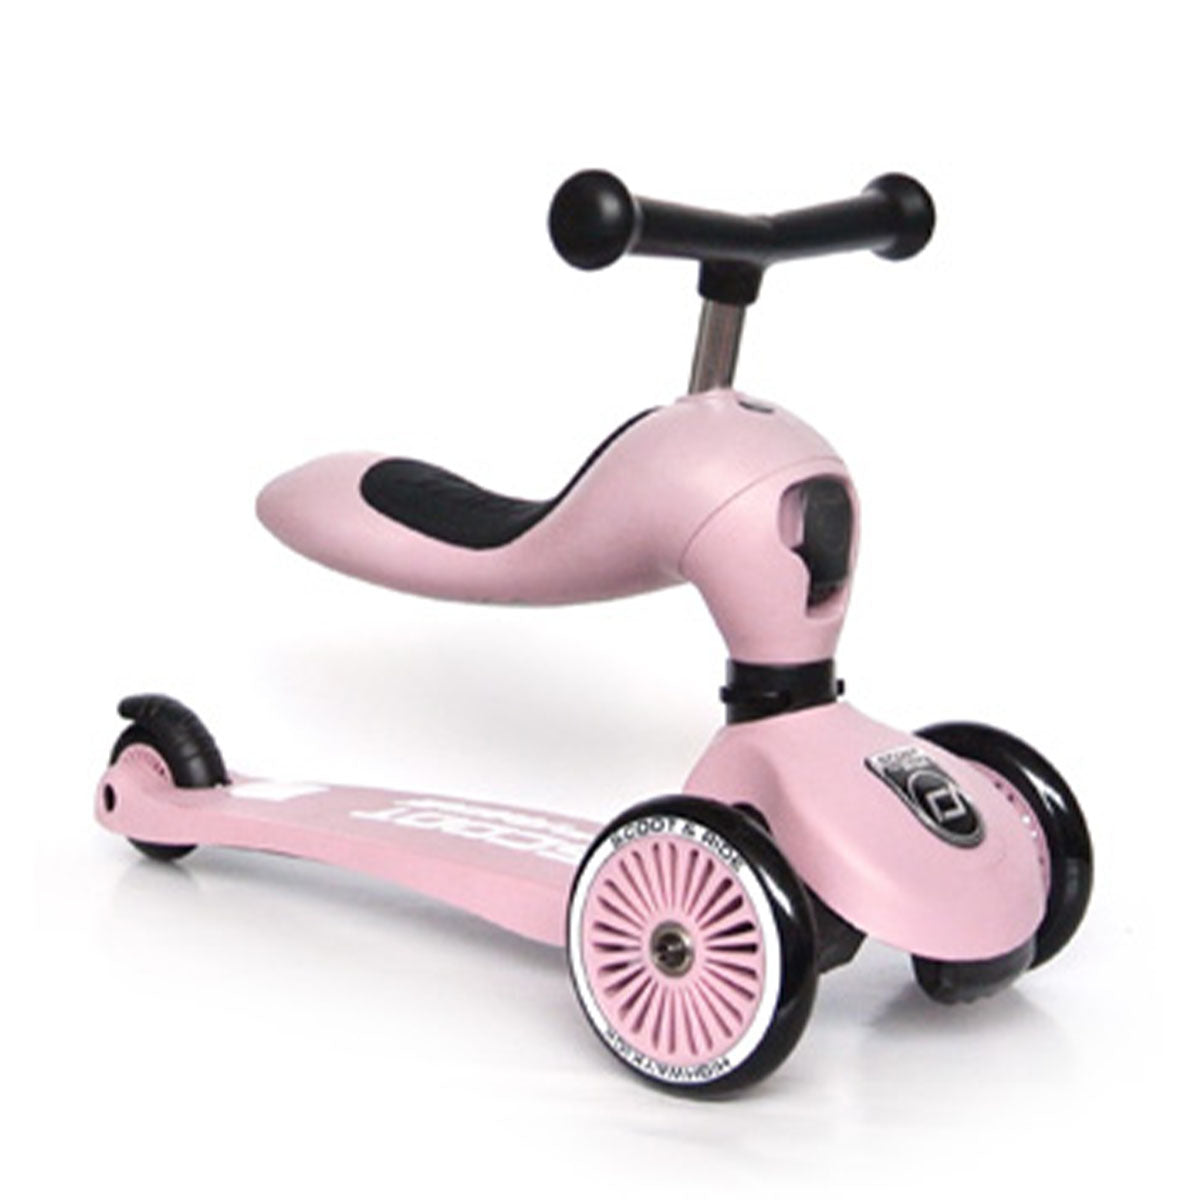 De Scoot and Ride Highwaykick 1 rose is een loopfiets en step in 1. De Scoot and Ride is het perfecte verjaardagscadeau voor een eerste verjaardag. Deze variant heeft een mooie roze kleur. VanZus.